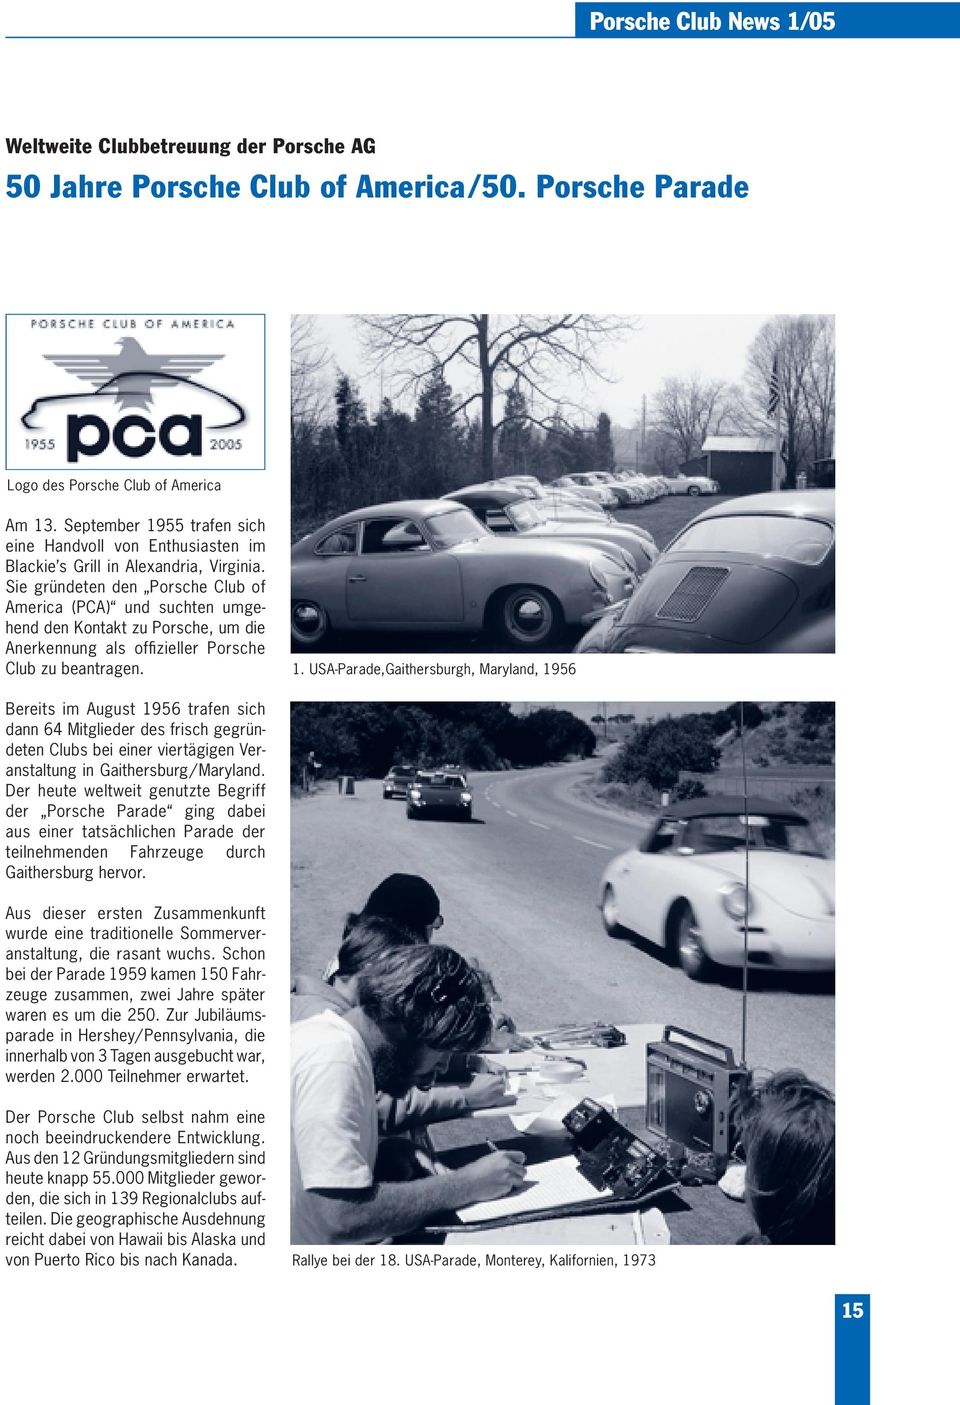 Sie gründeten den Porsche Club of America (PCA) und suchten umgehend den Kontakt zu Porsche, um die Anerkennung als offizieller Porsche Club zu beantragen. 1.